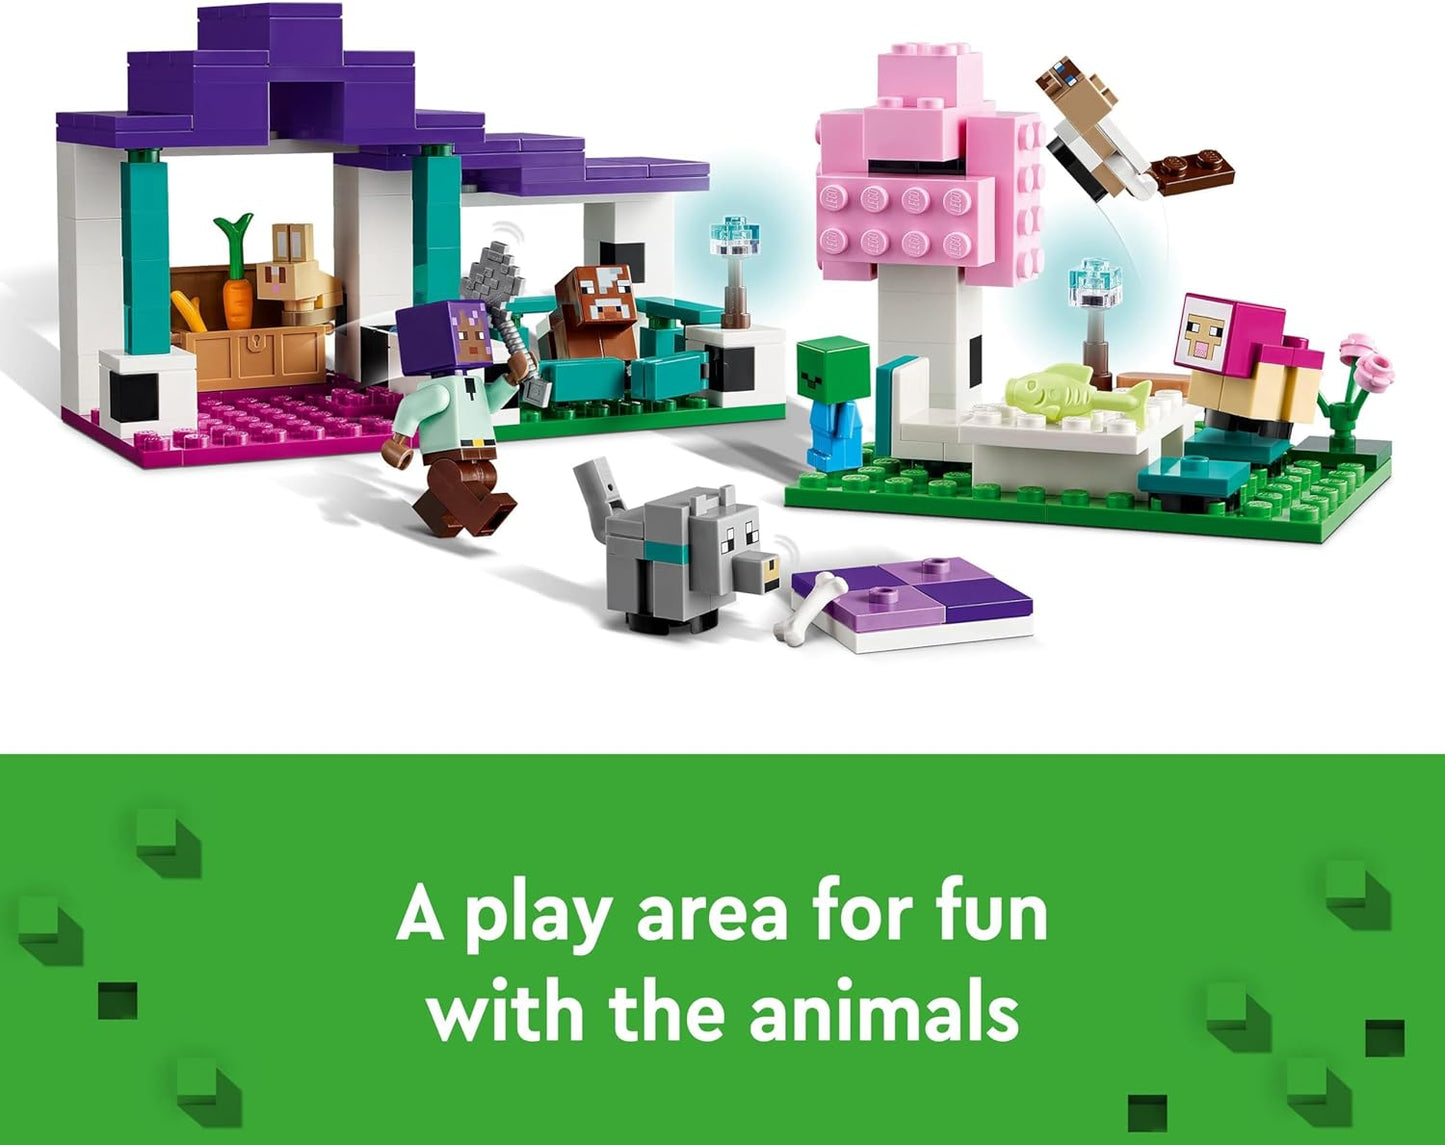 LEGO Minecraft The Animal Sanctuary, brinquedos de construção para meninas e meninos de 7 anos ou mais com figuras de personagens, além de bebê zumbi, vaca, lobo, coelho, ovelha magenta e gato, presente para jogadores e crianças 21253